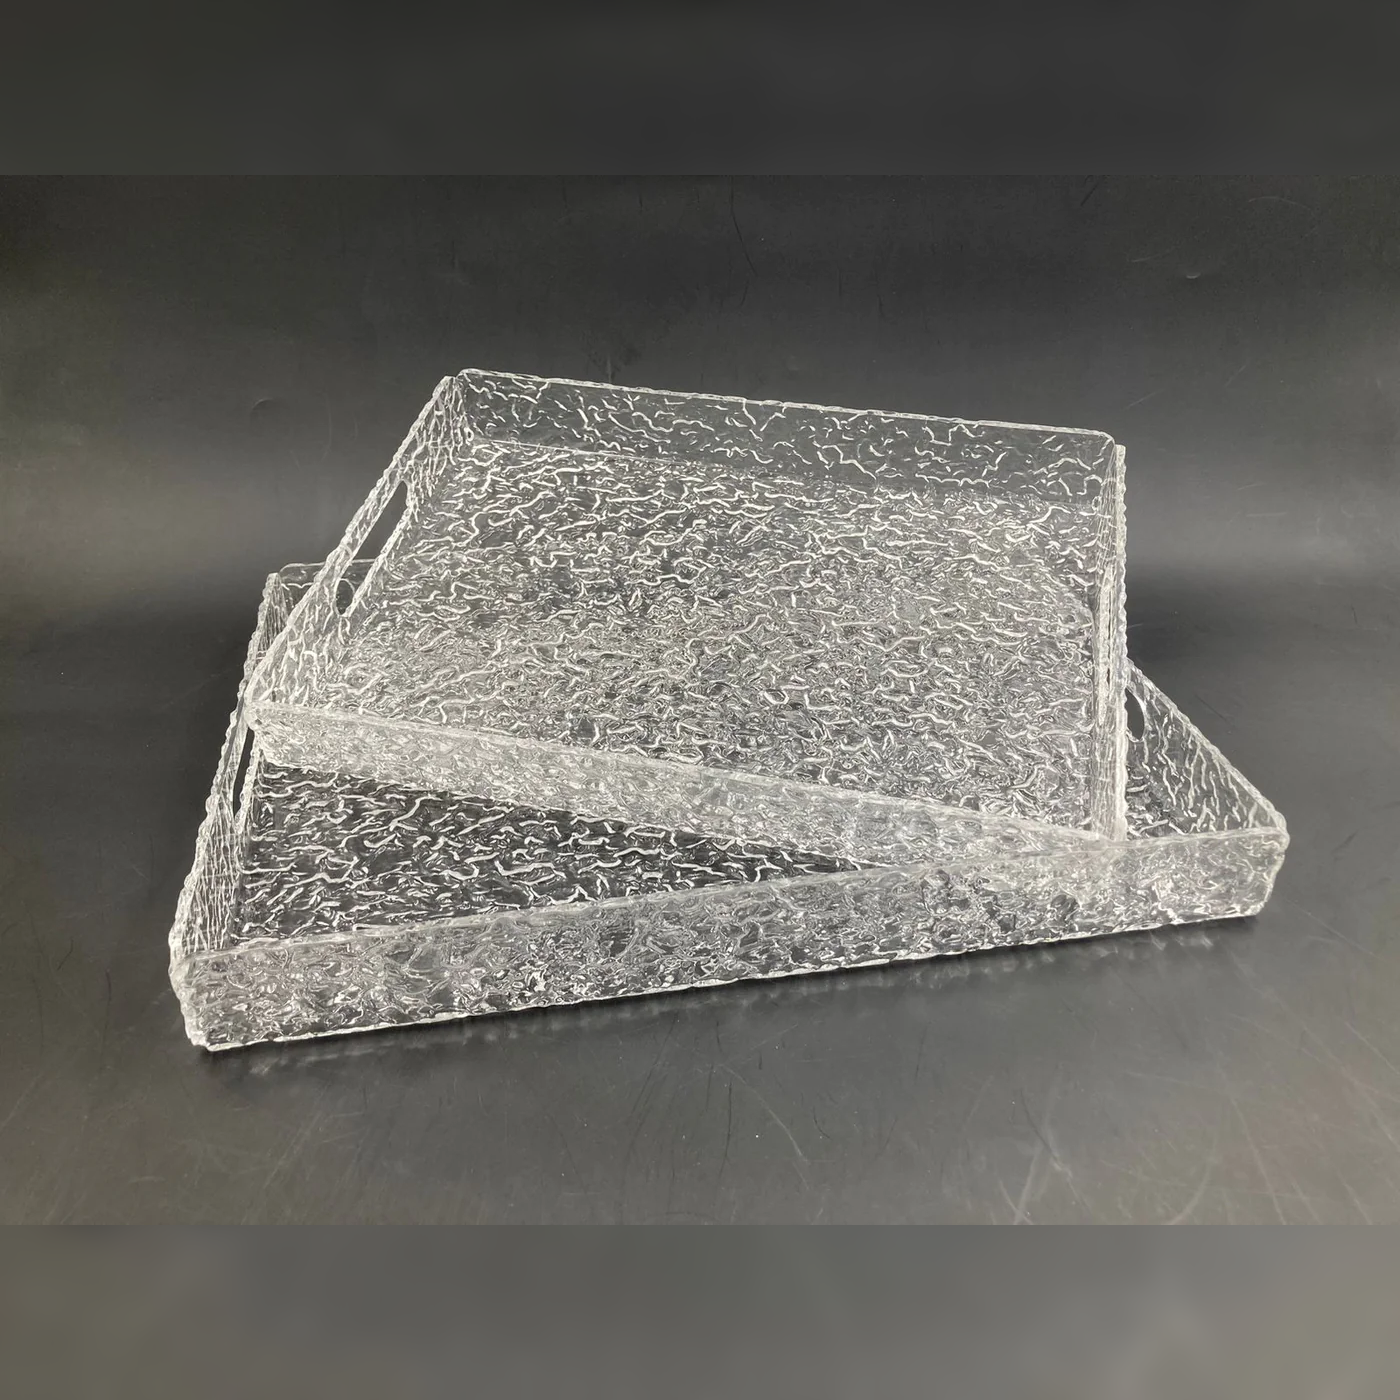 Set of 2 Acrylic Serving Trays w Texture Design - Lunaz Shop